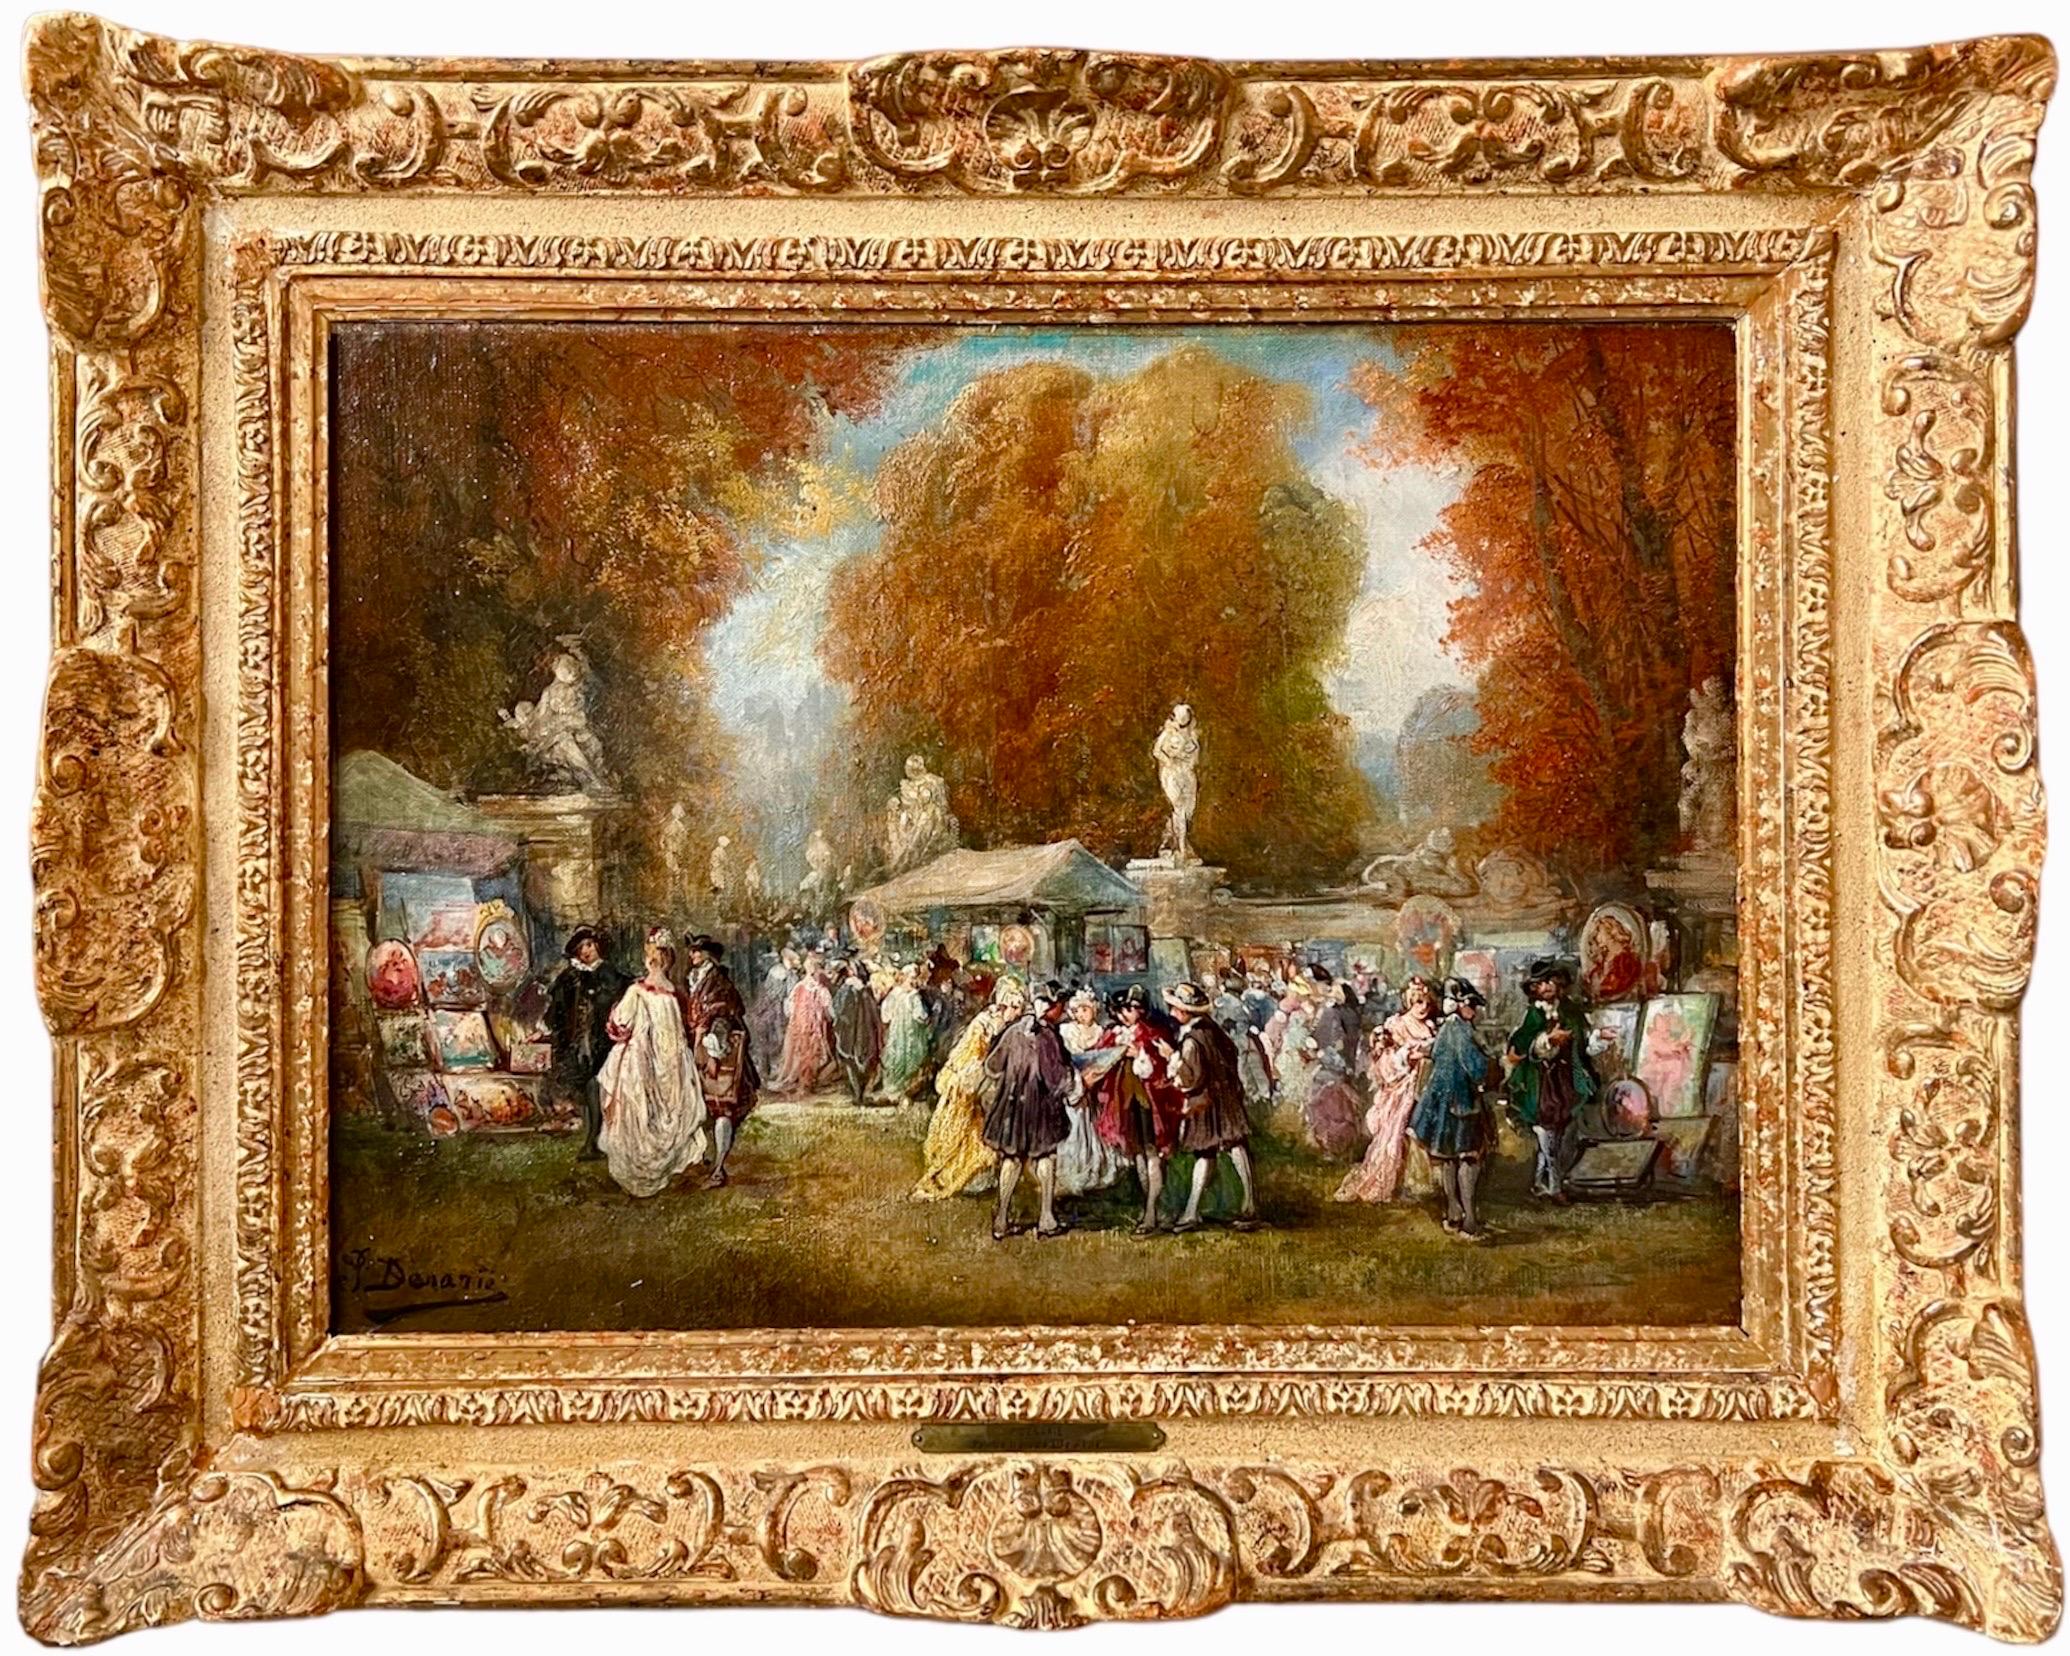 Paul Denarié (Jean Sorlain) Figurative Painting - 19th century French romantic painting - The art fair in a park landscape